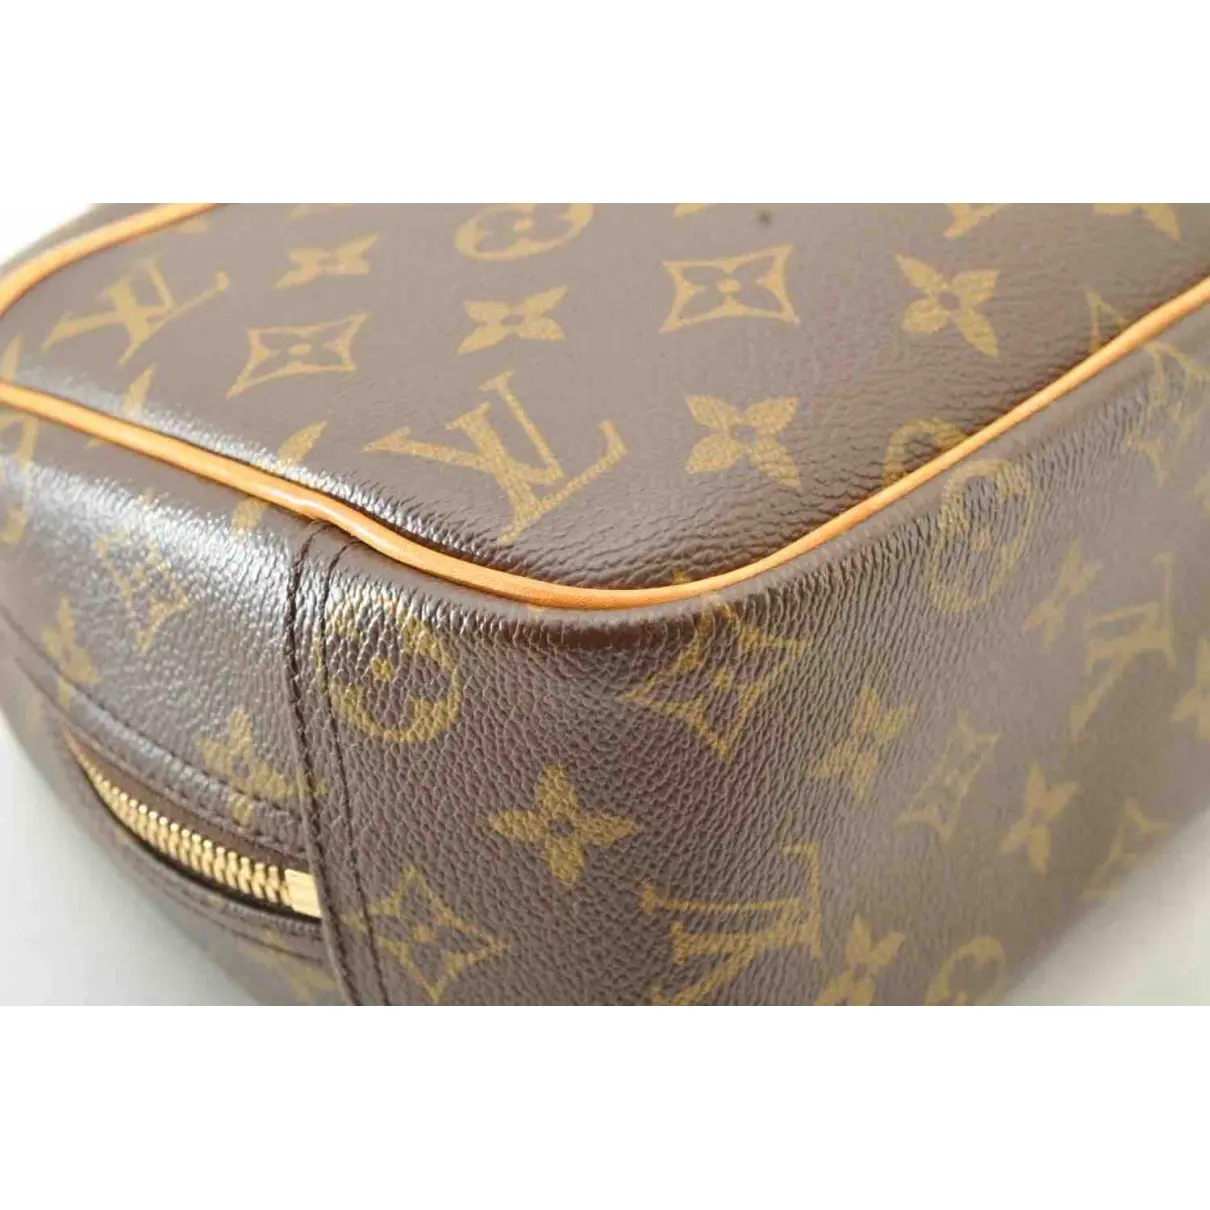 Trouville cloth handbag Louis Vuitton